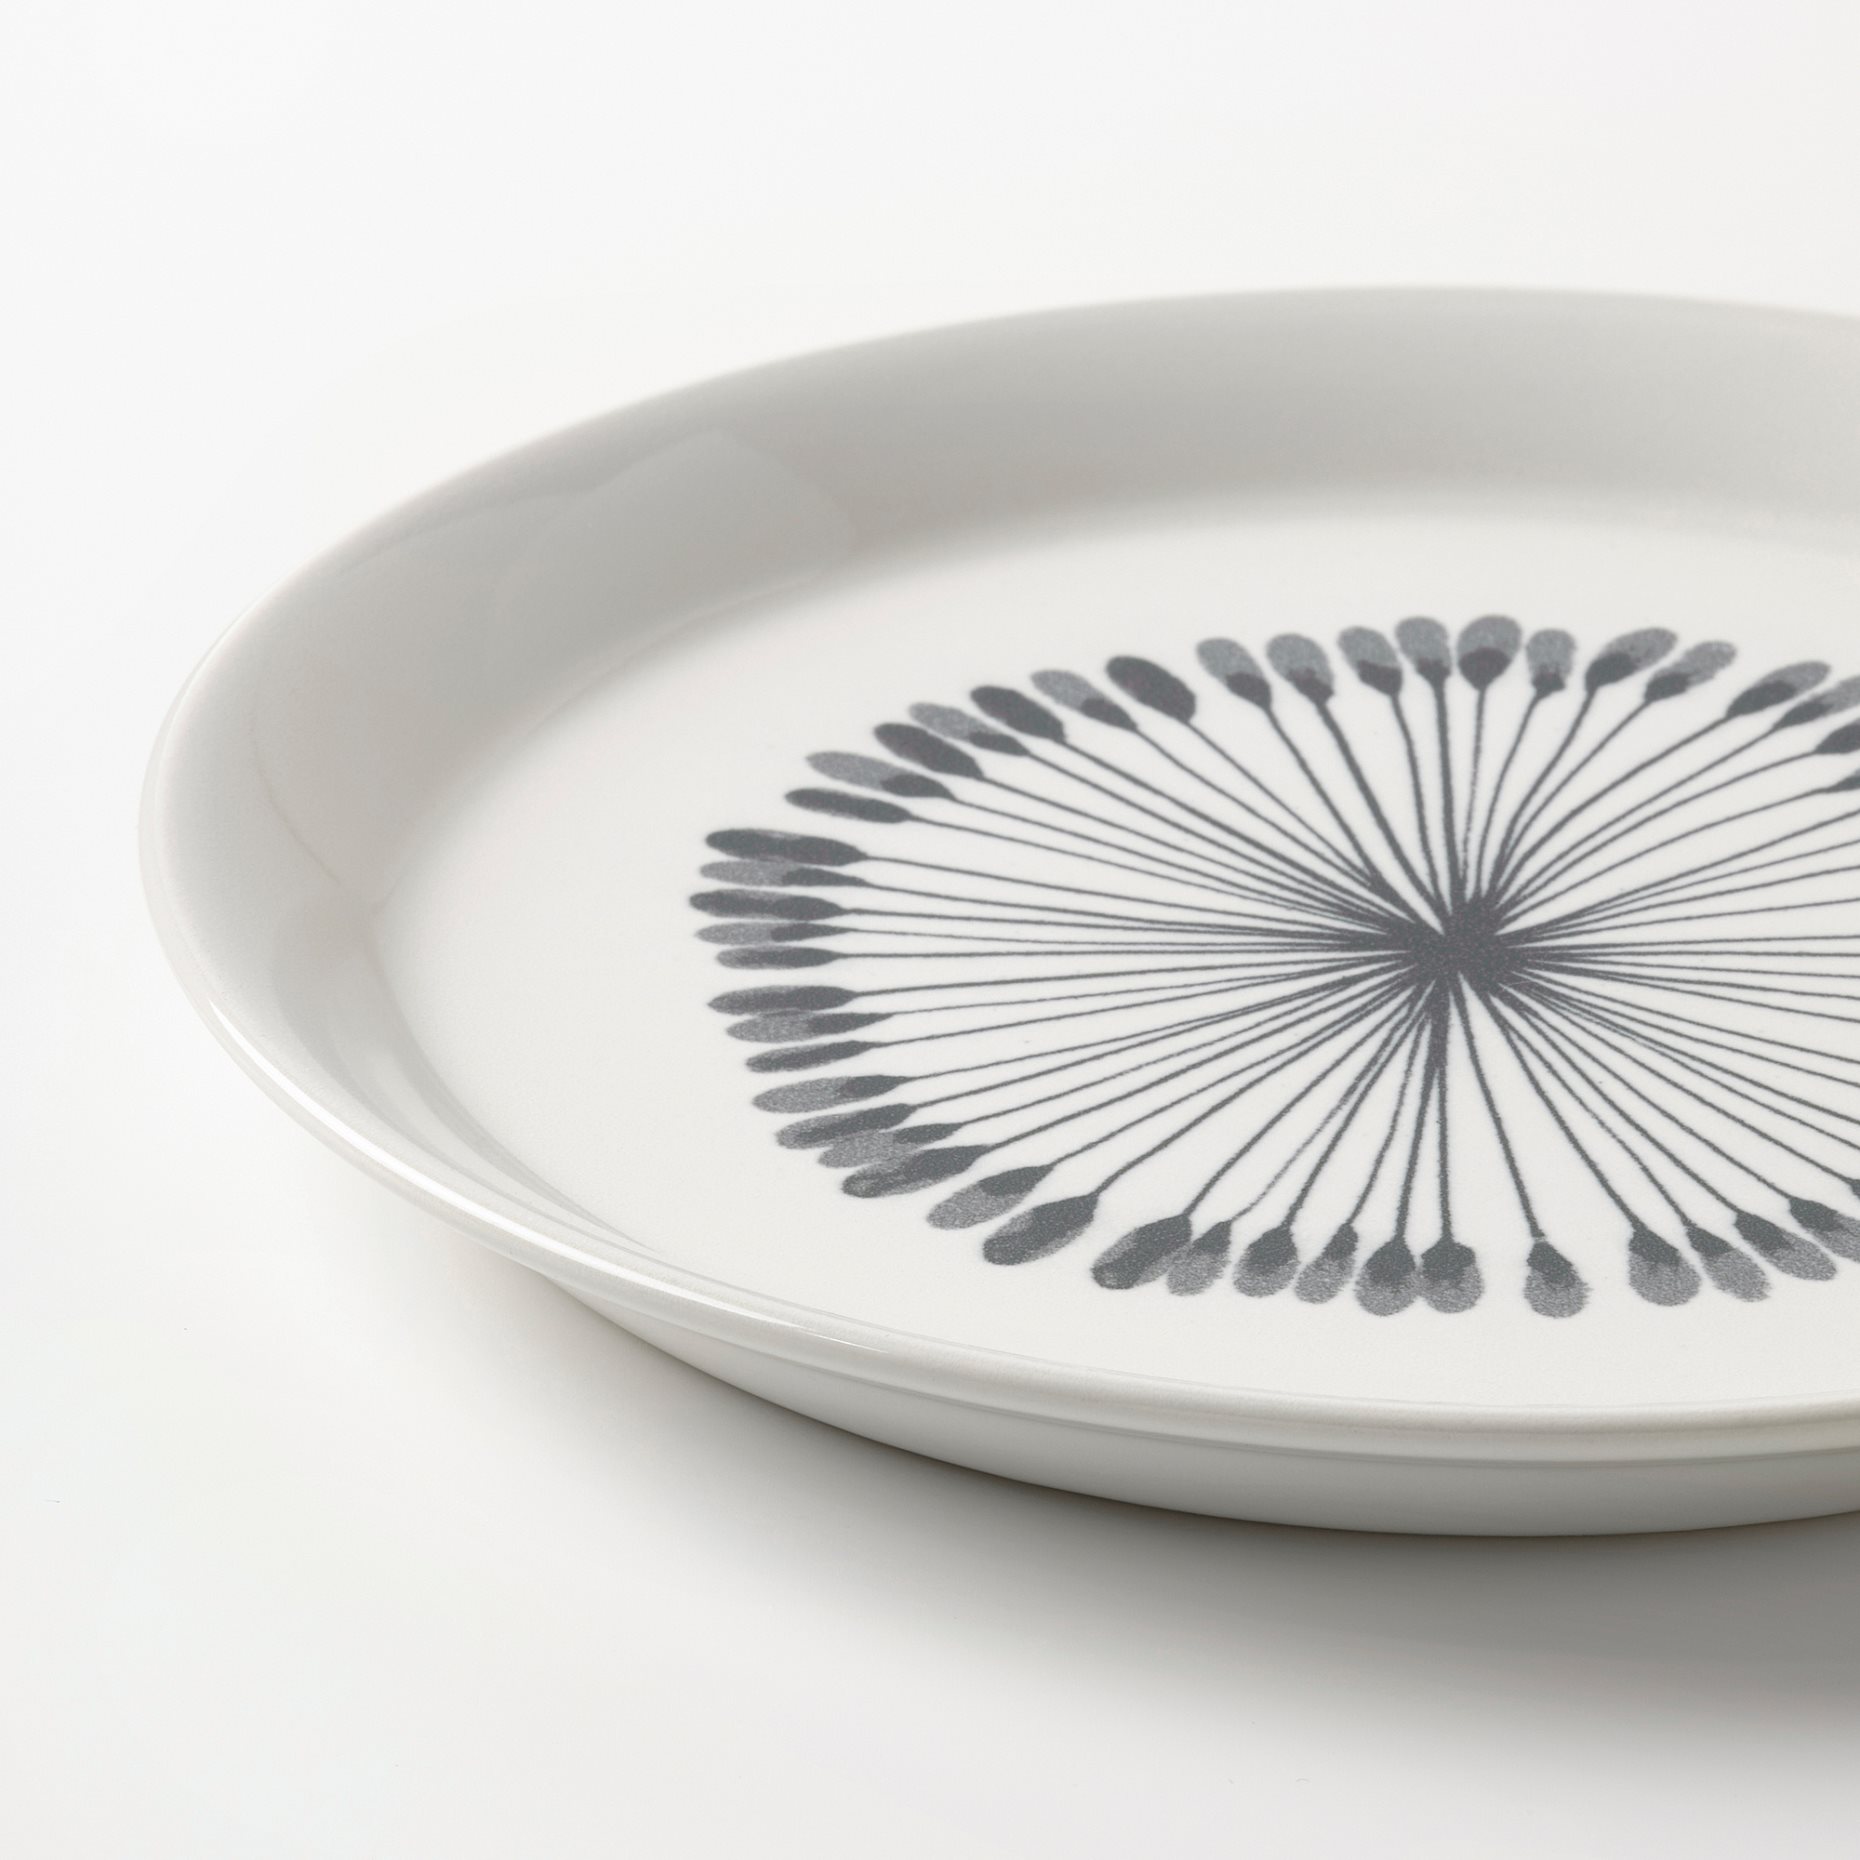 FRIKOSTIG, side plate/patterned, 19 cm, 504.694.05